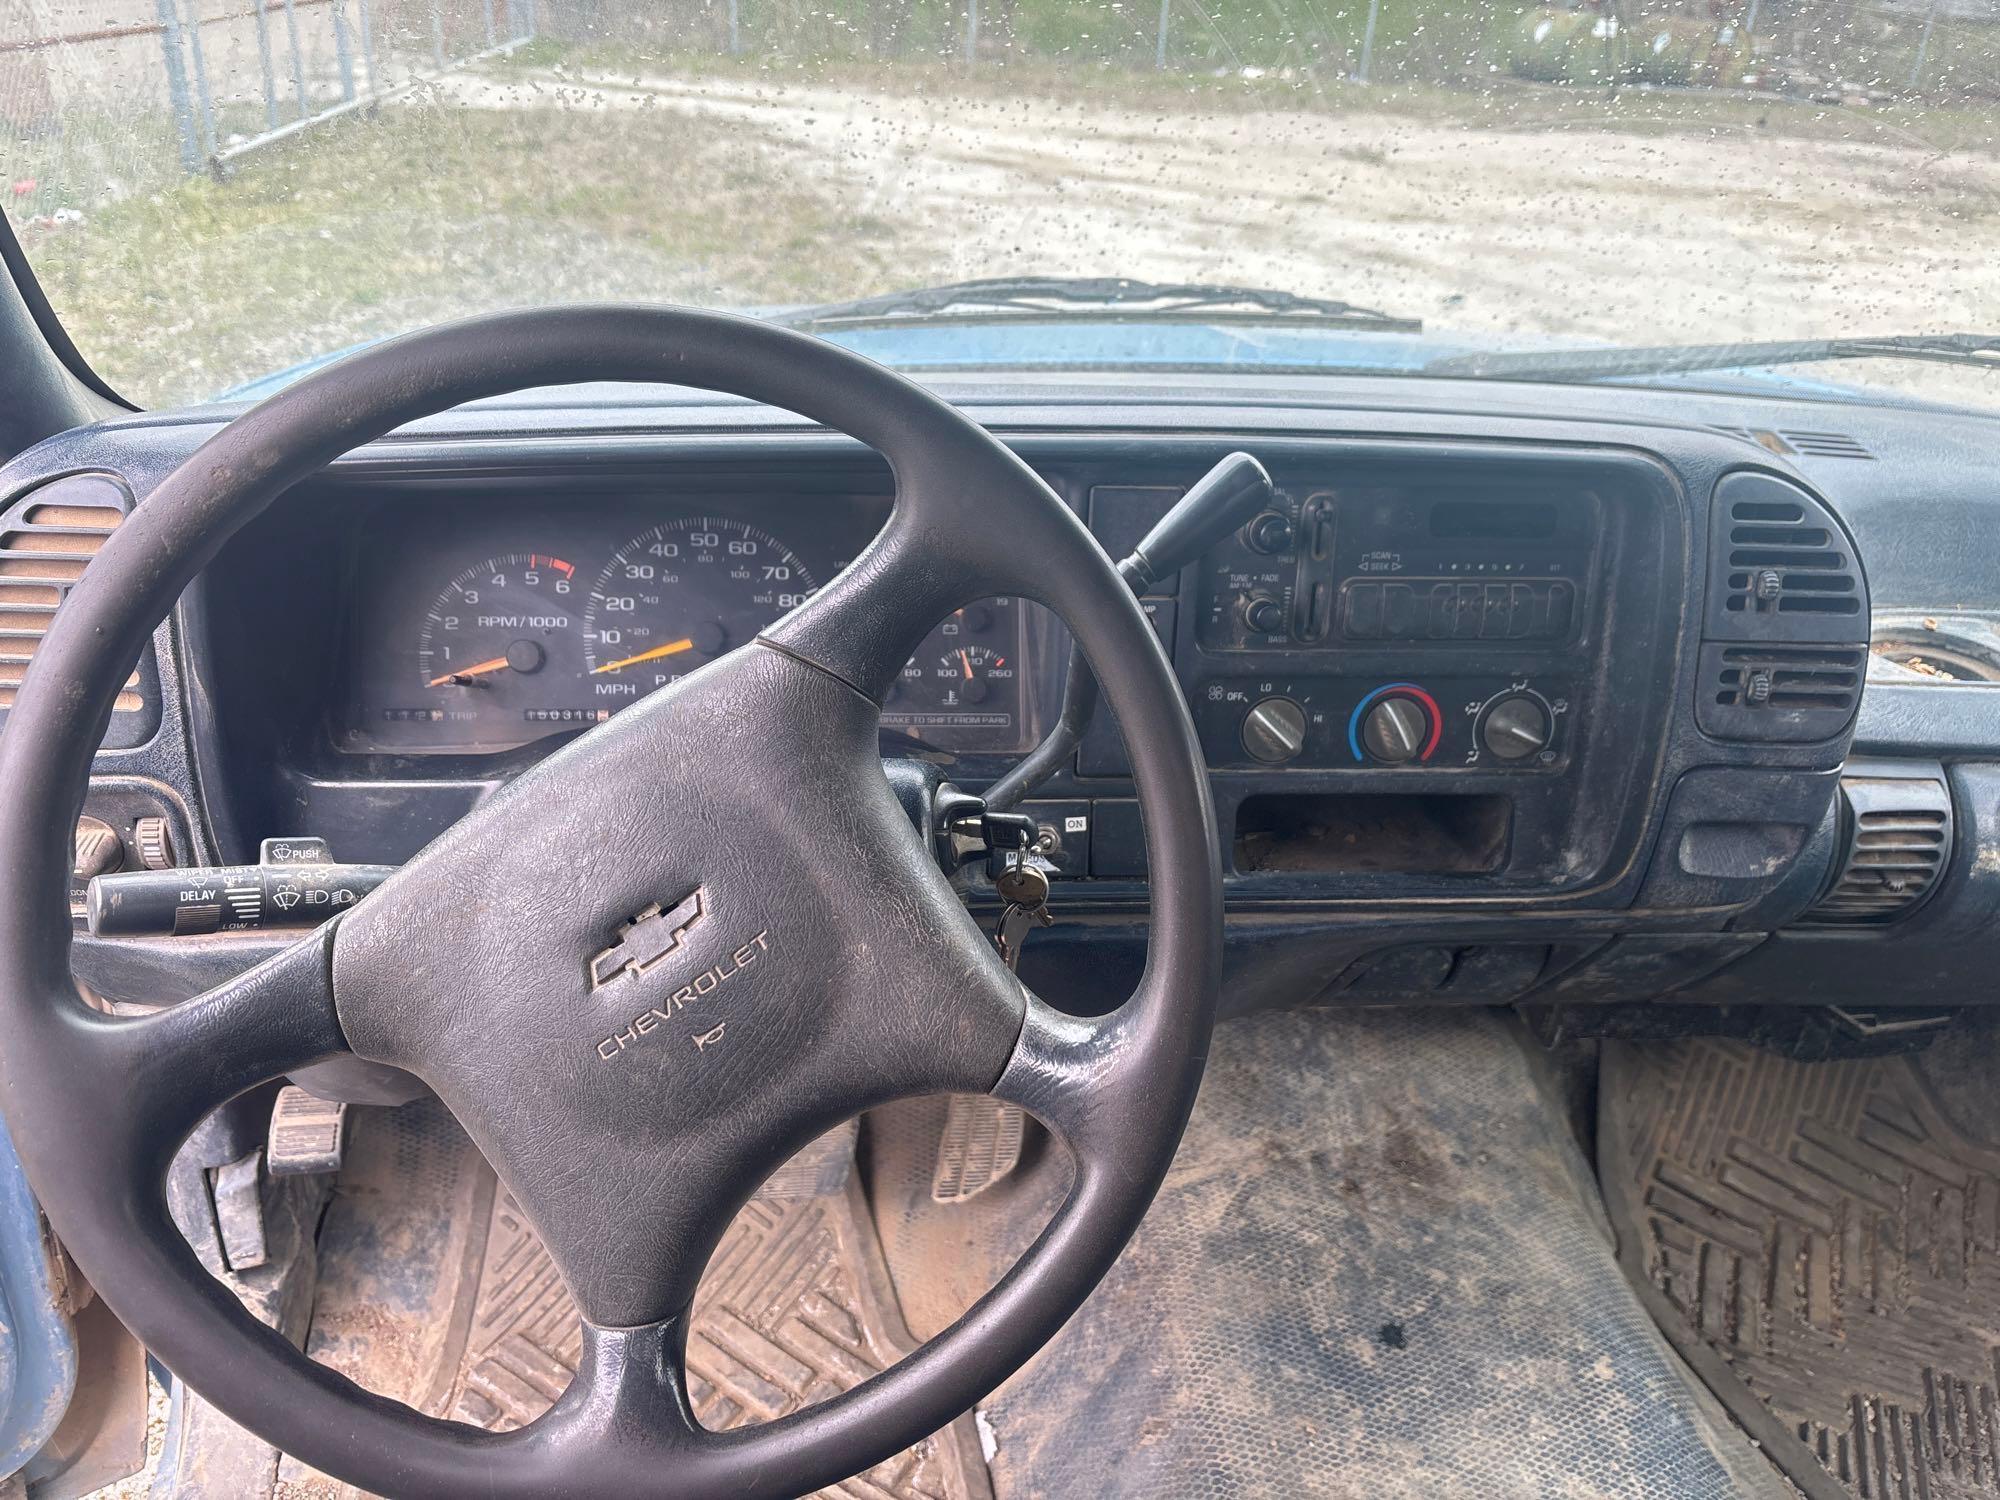 1996 Chevy C3500